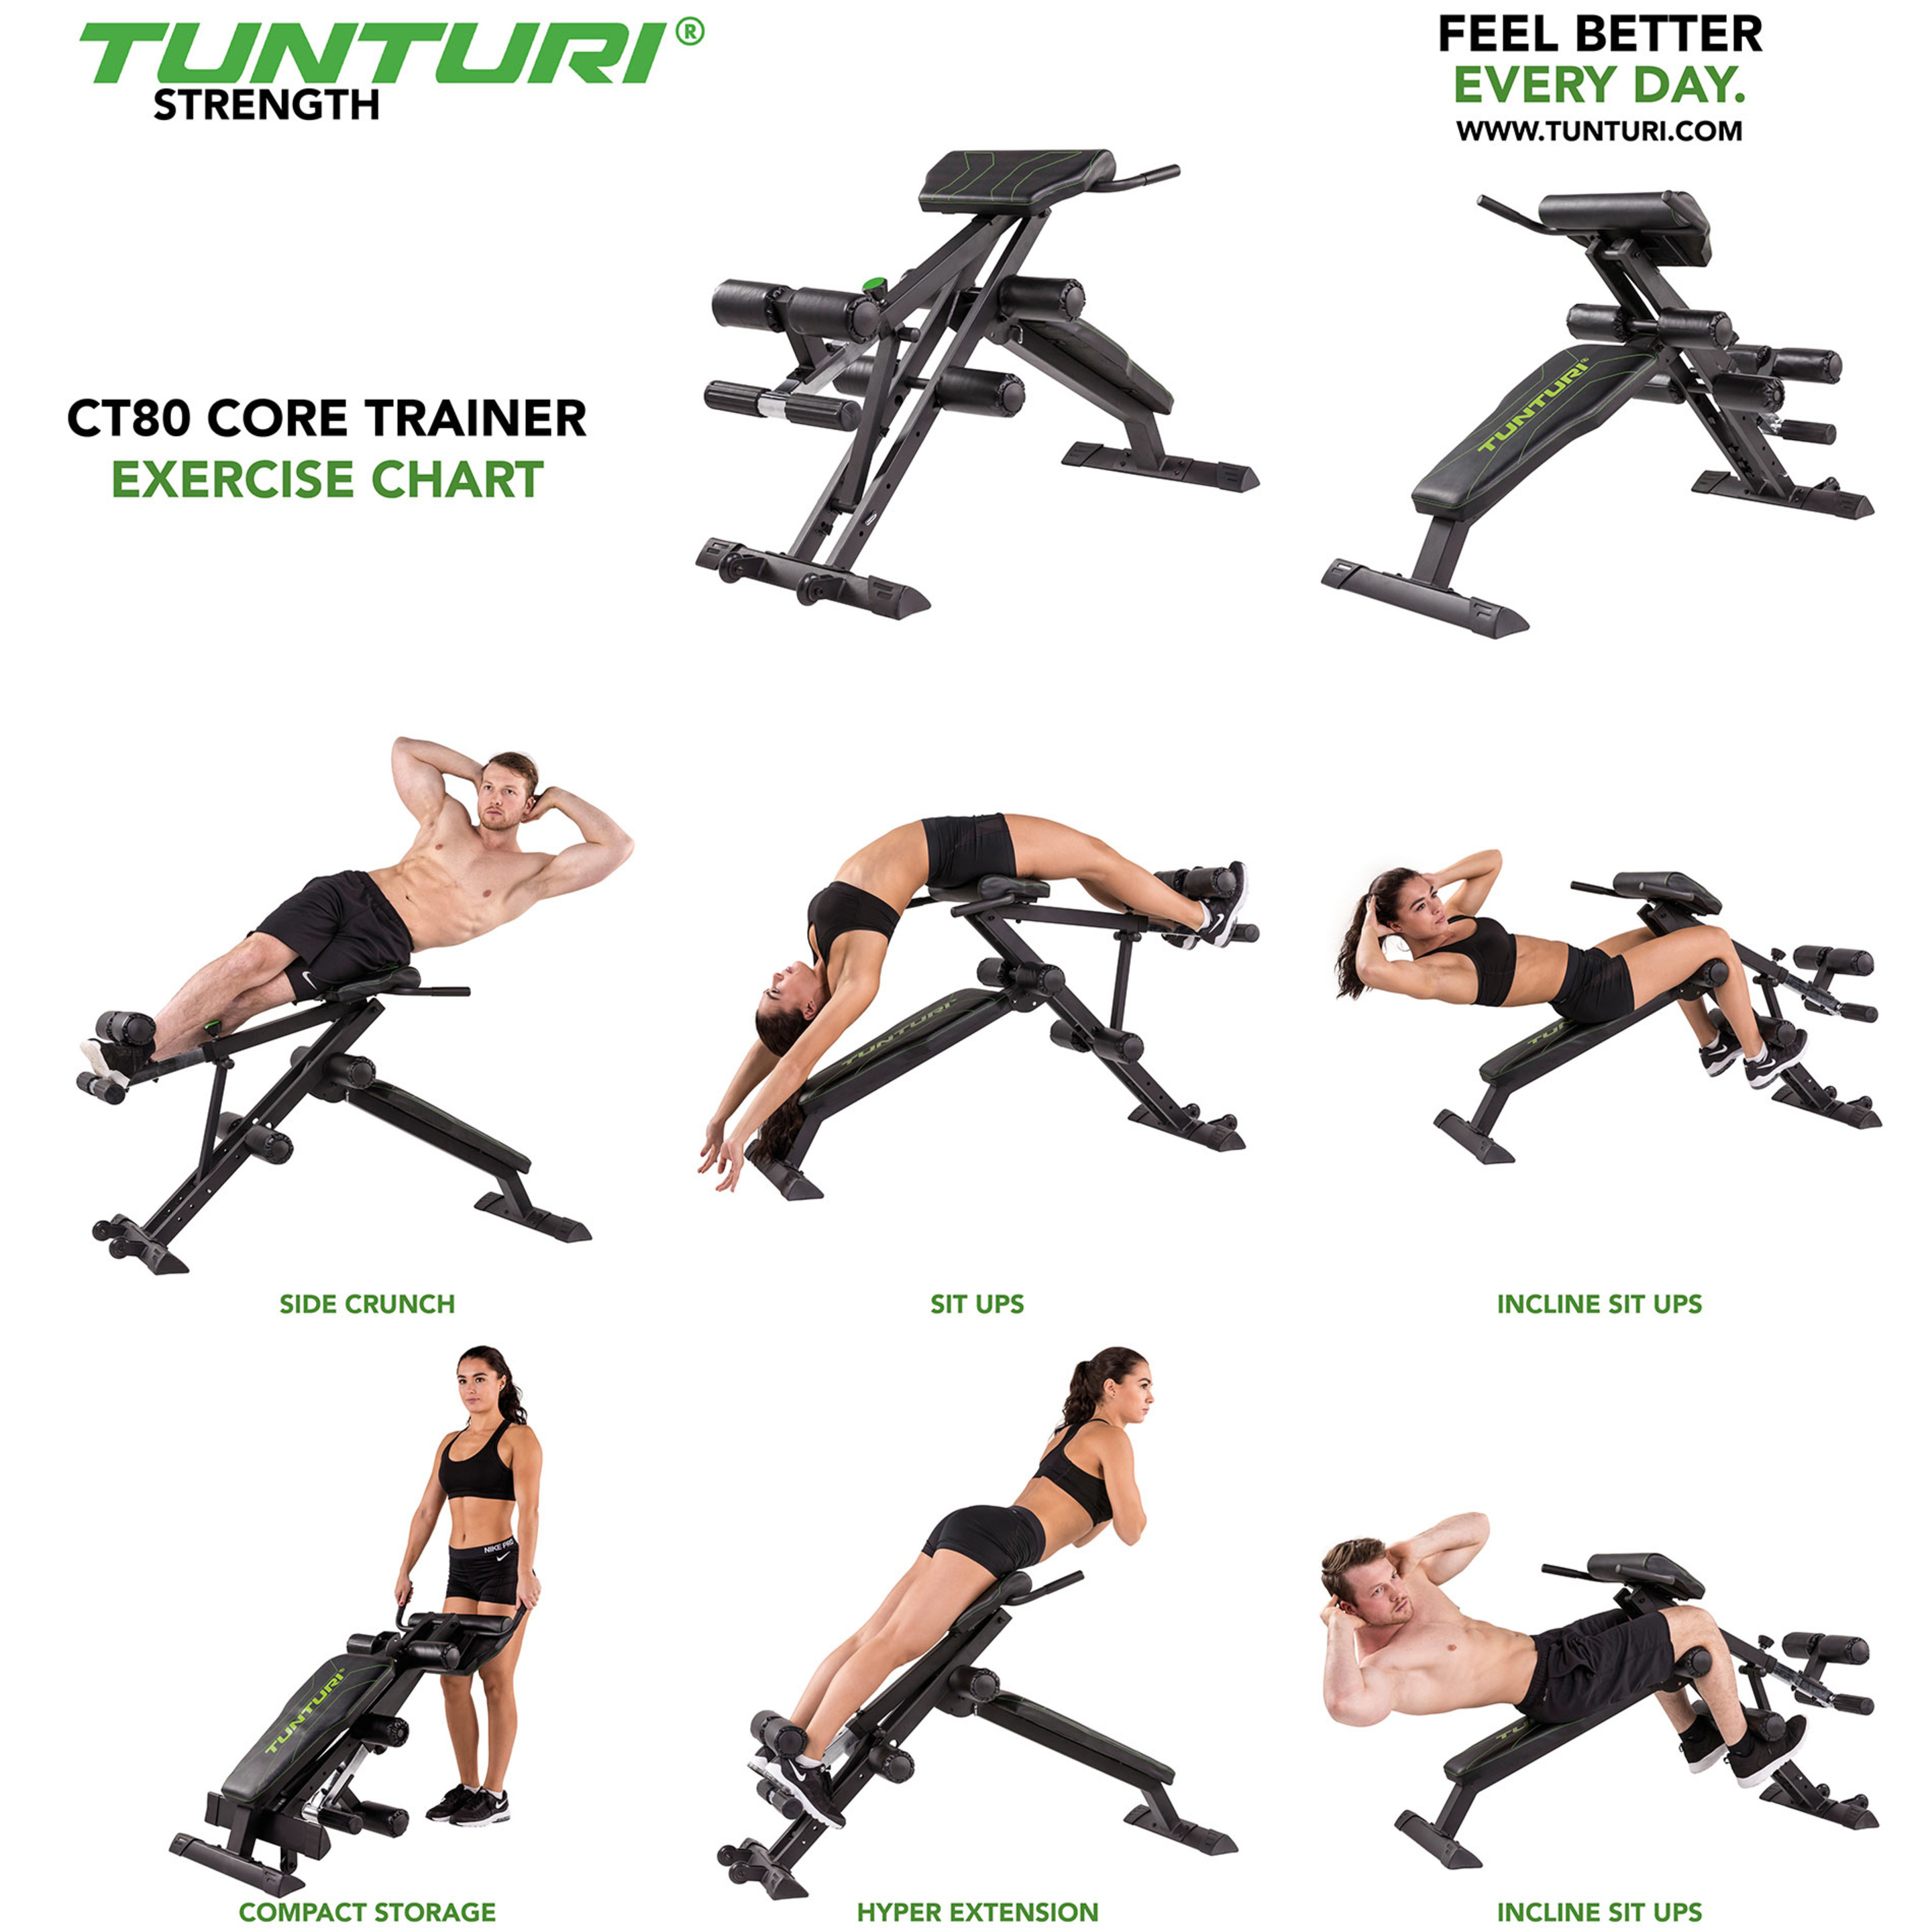 Banco De Musculación Ct80 Core Trainer Tunturi